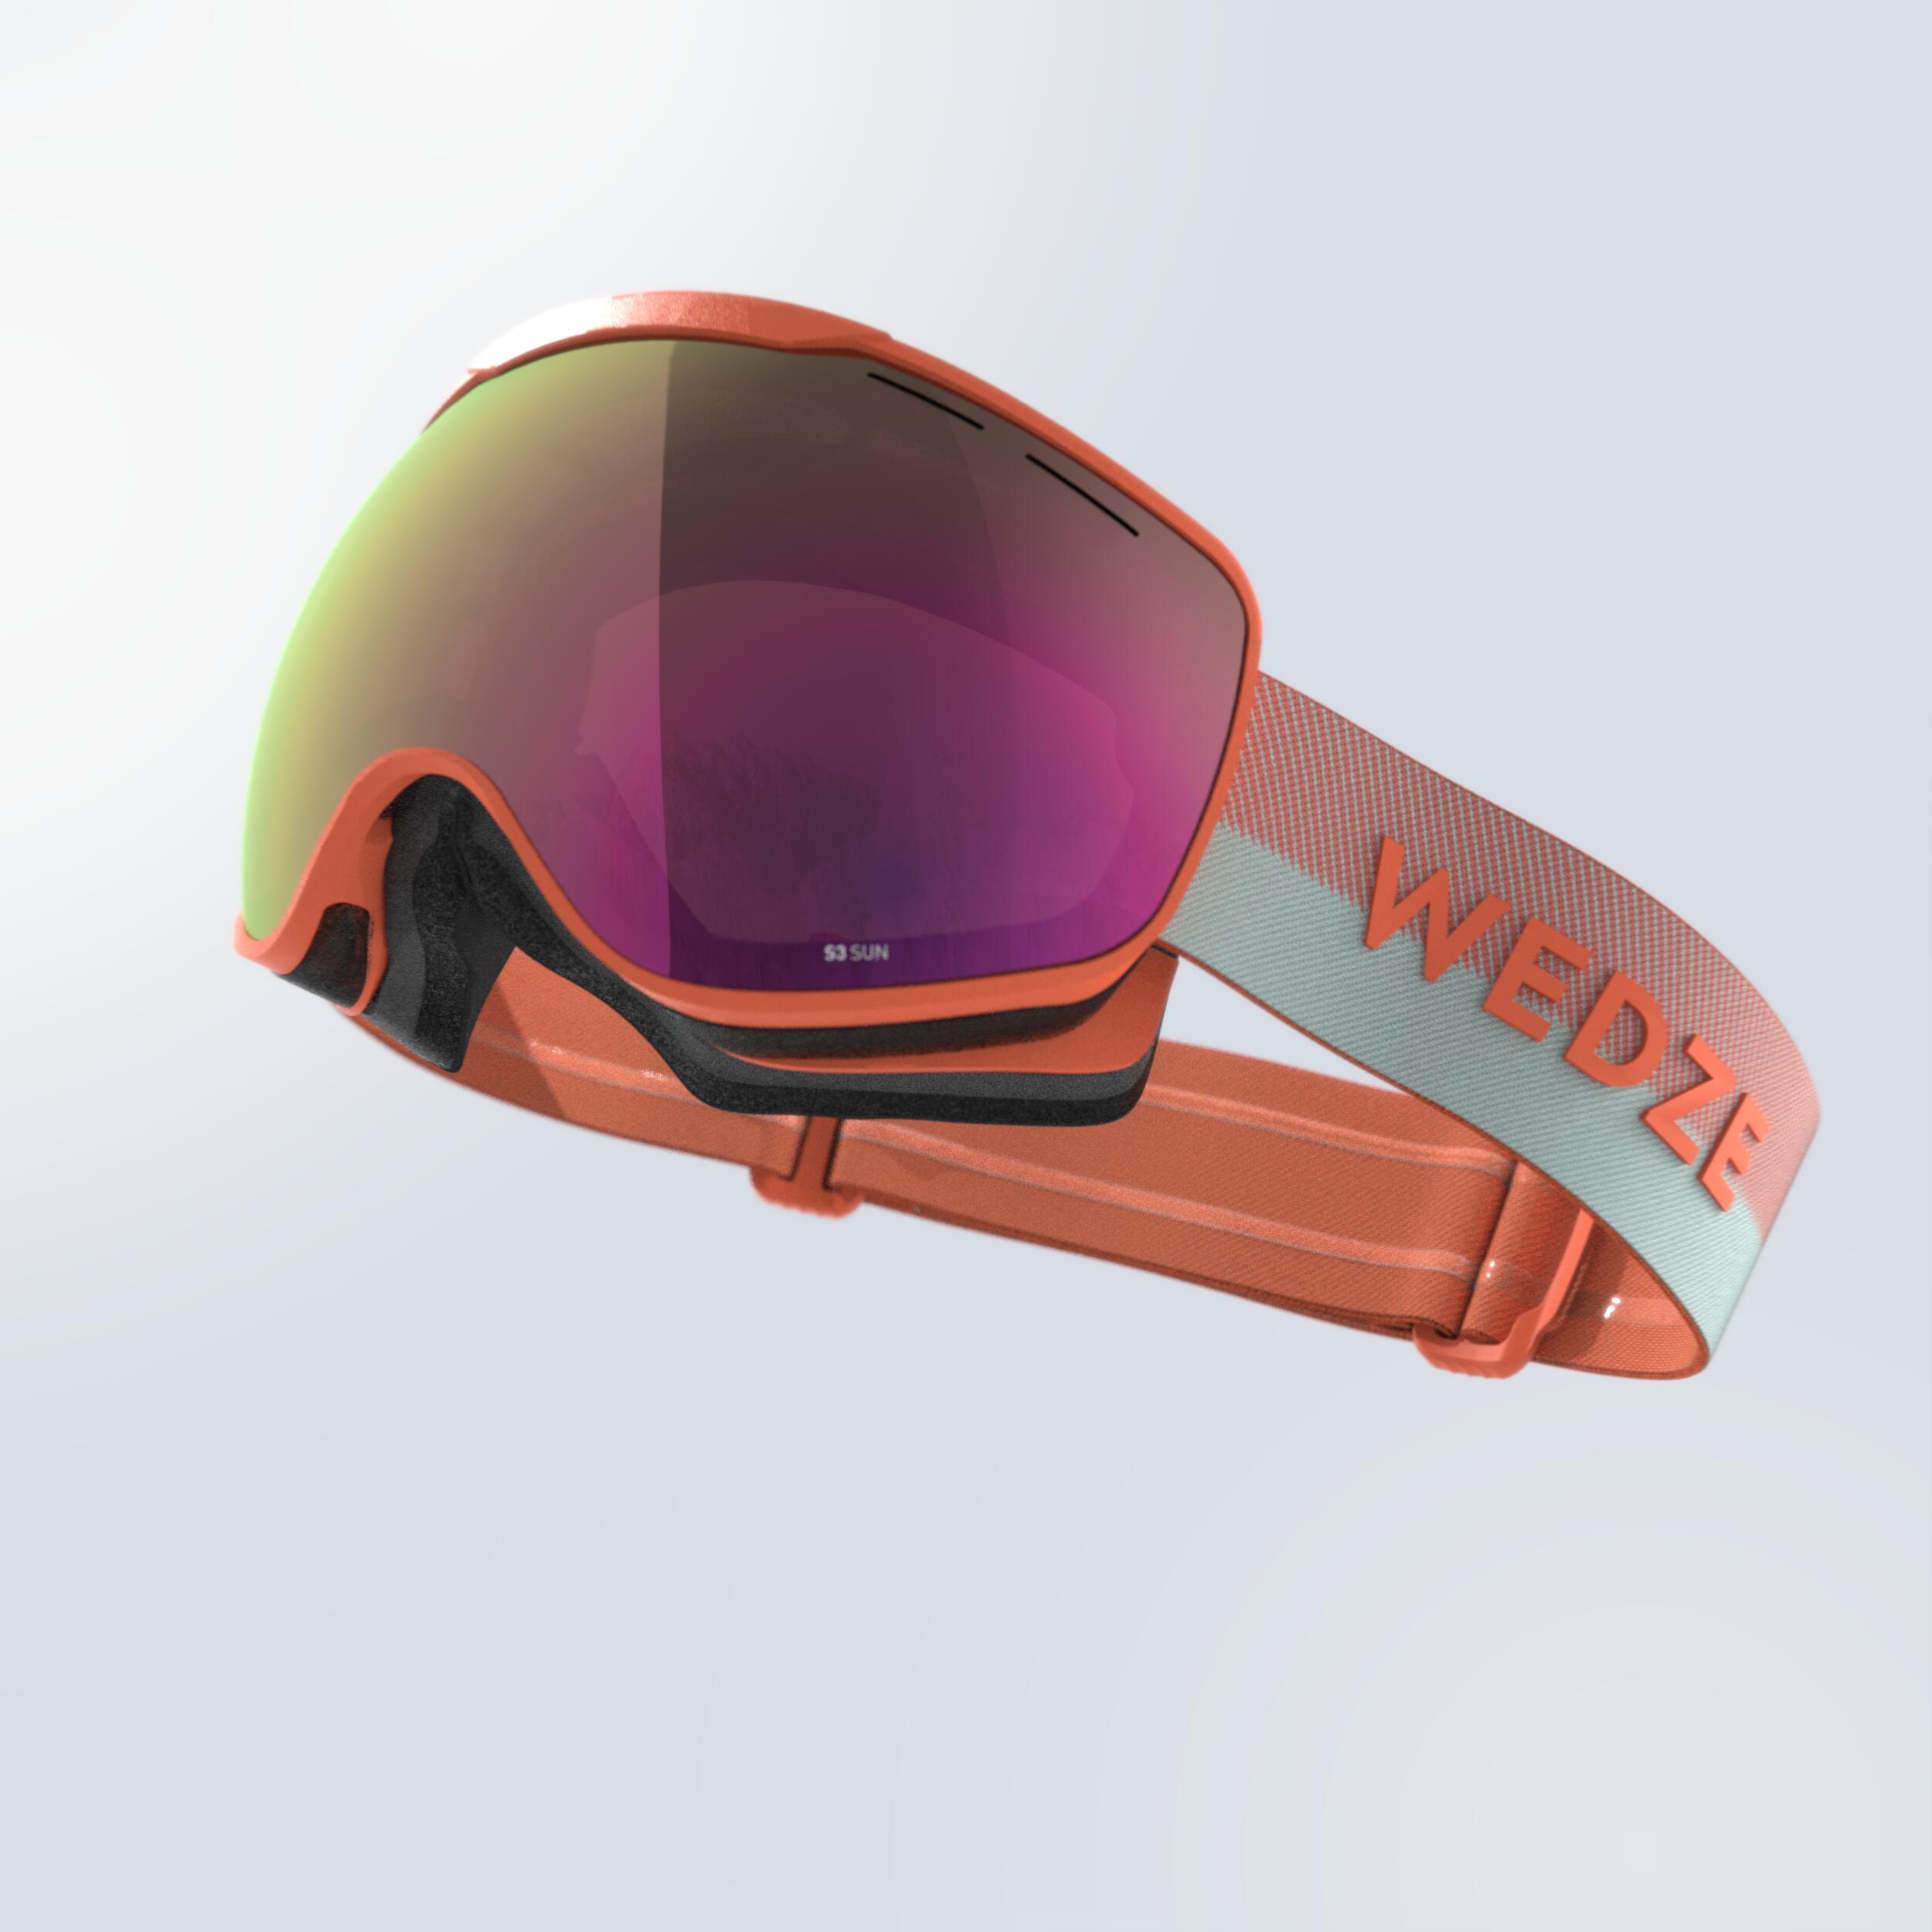 Skid- Och Snowboardglasögon Vuxen Och Junior g 900 Fint Väder Grön